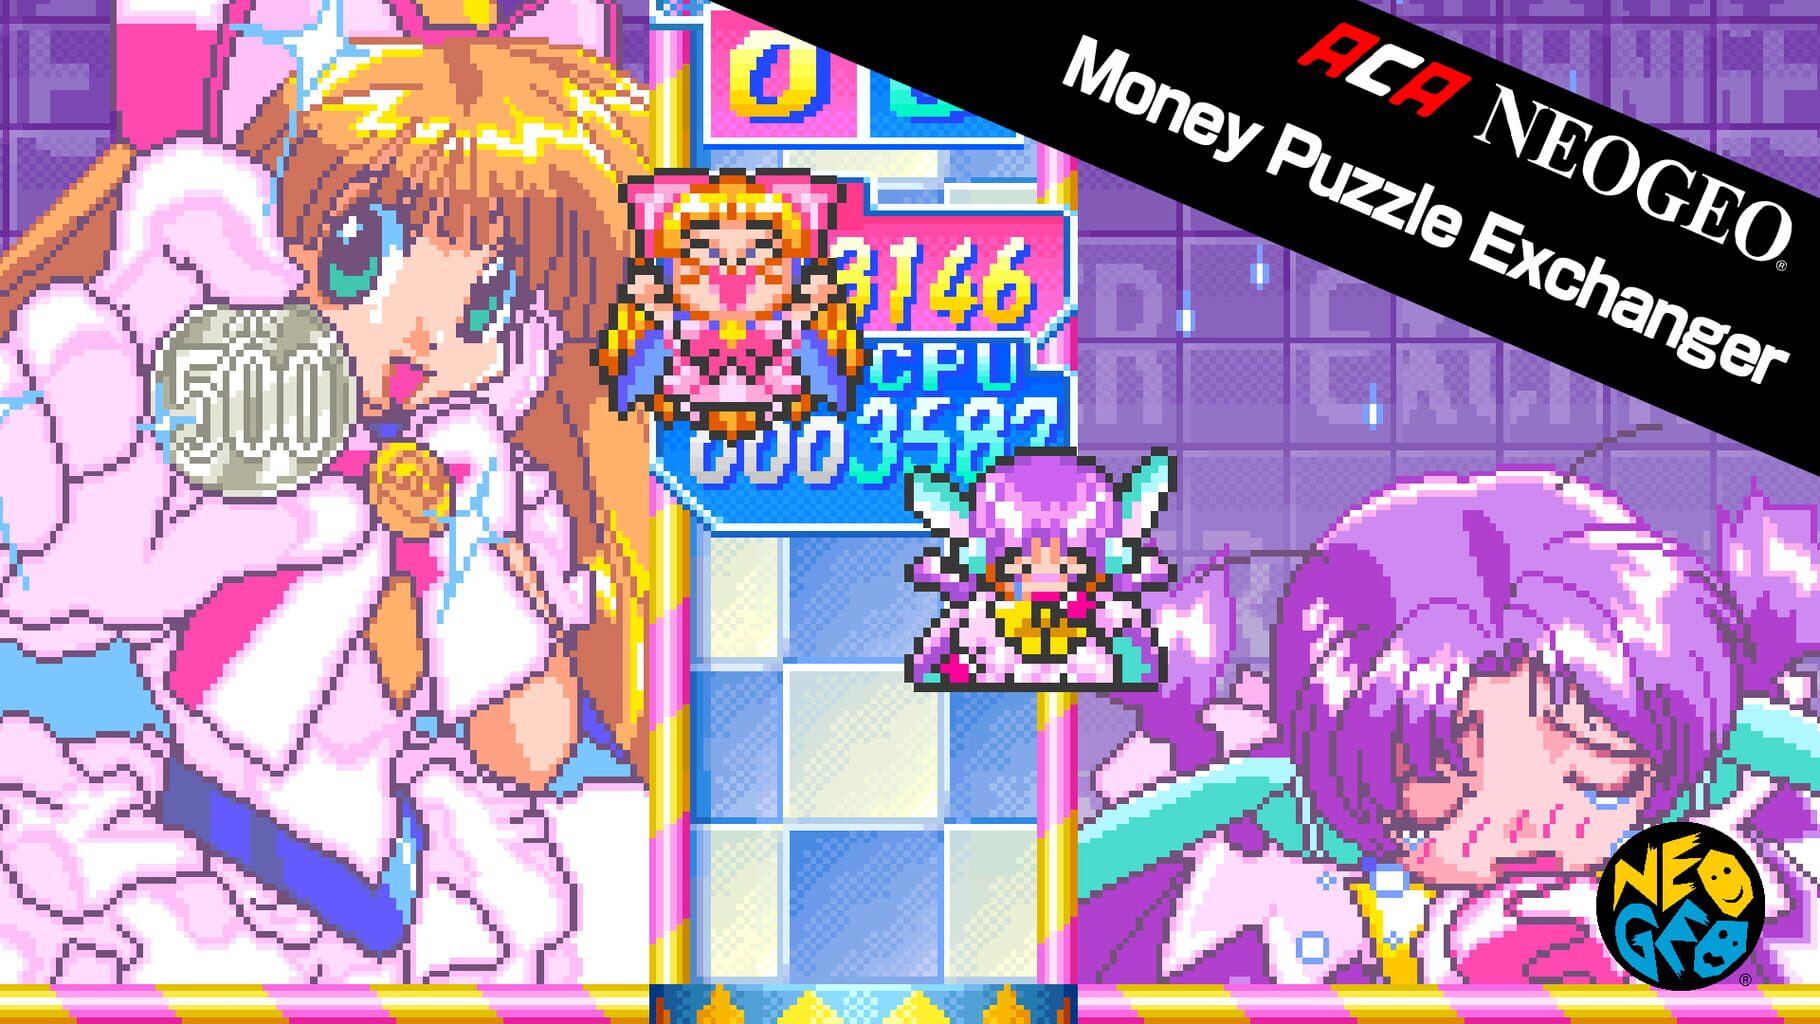 Arte - ACA Neo Geo: Money Puzzle Exchanger